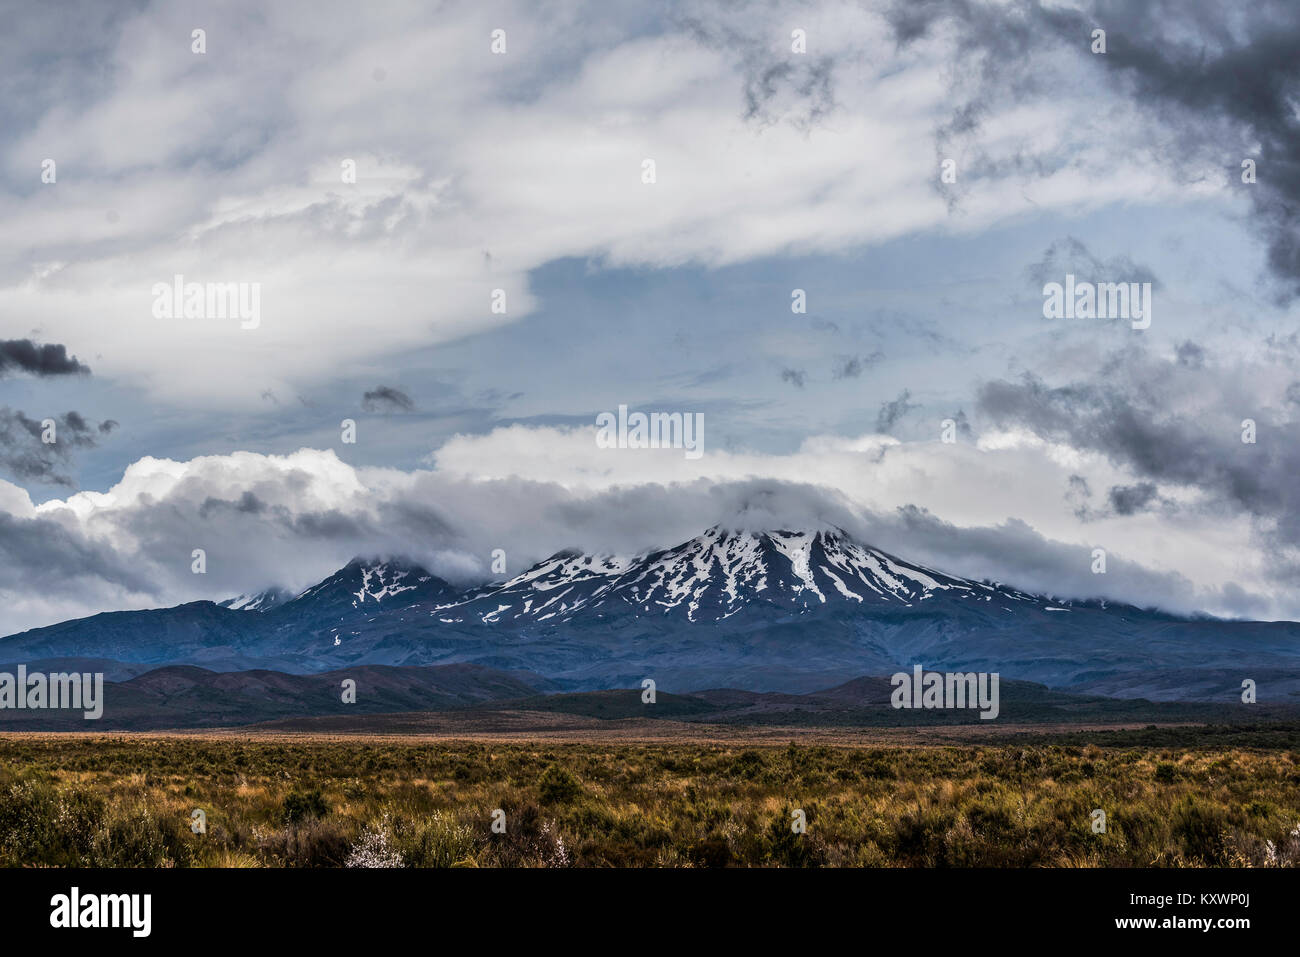 volcanoes of Tongariro National Park, New Zealand Stock Photo